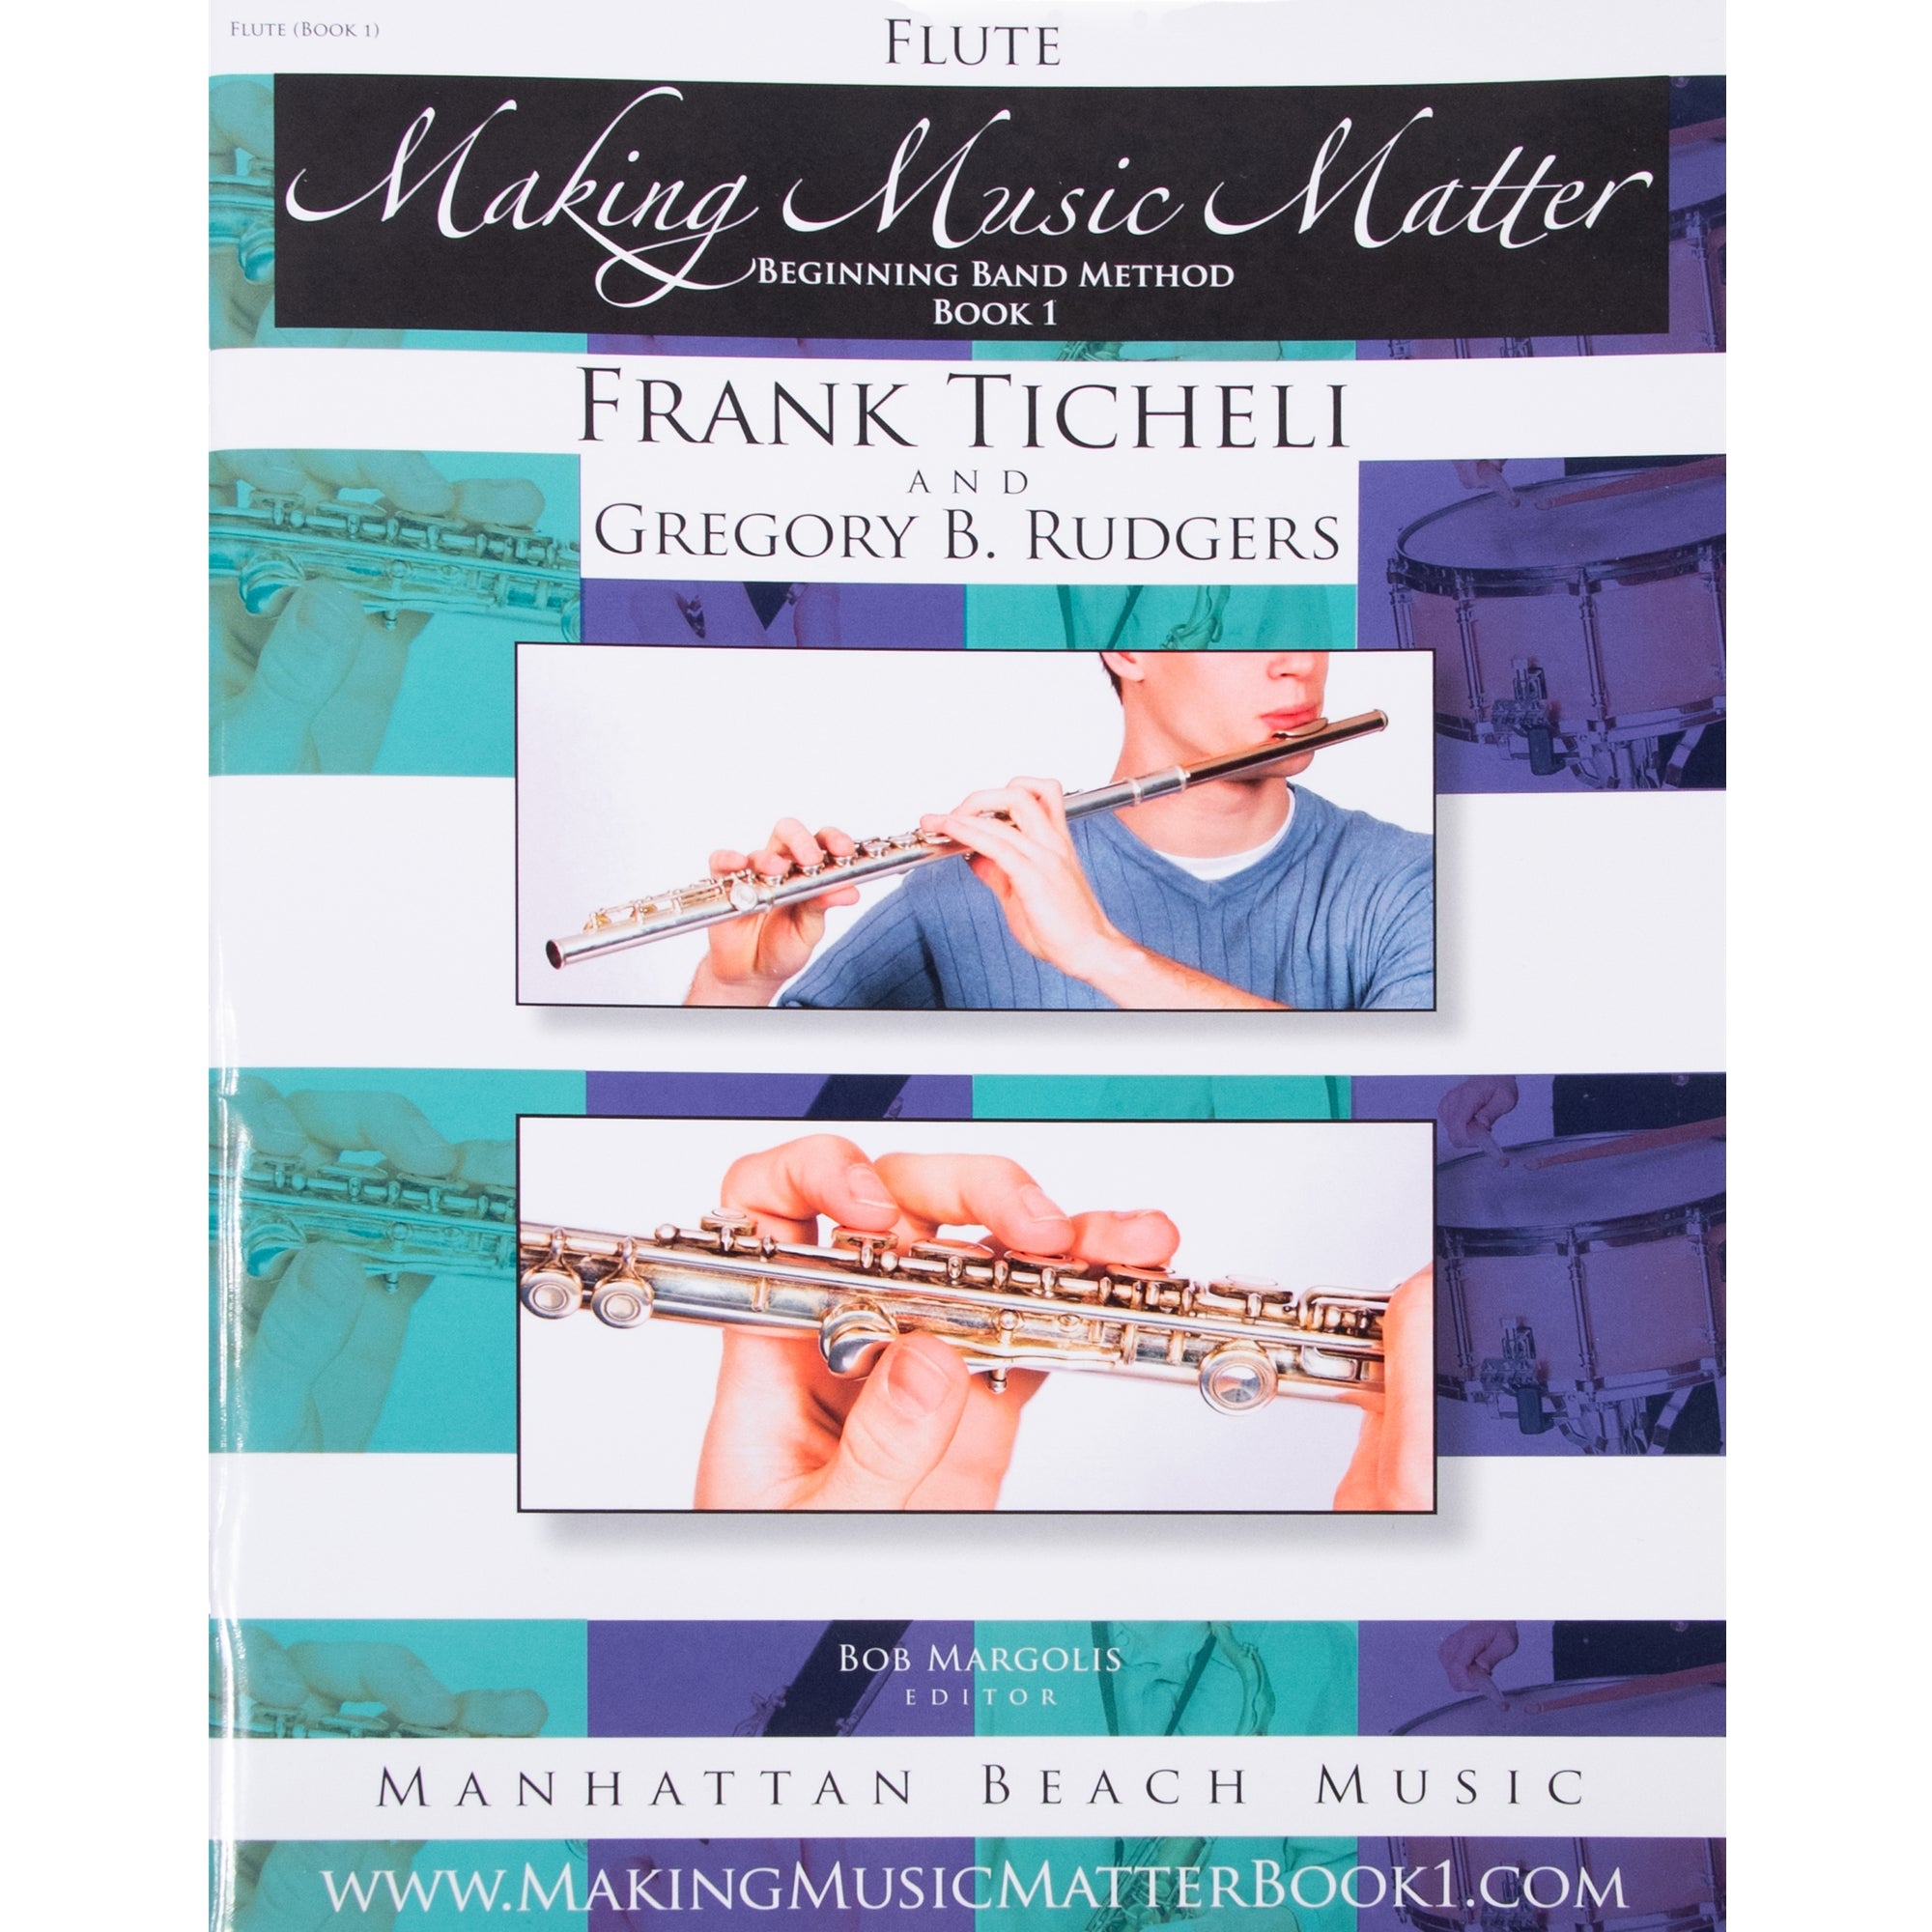 MANHATTAN BEACH 205977 Making Music Matter, Flute (Book 1)